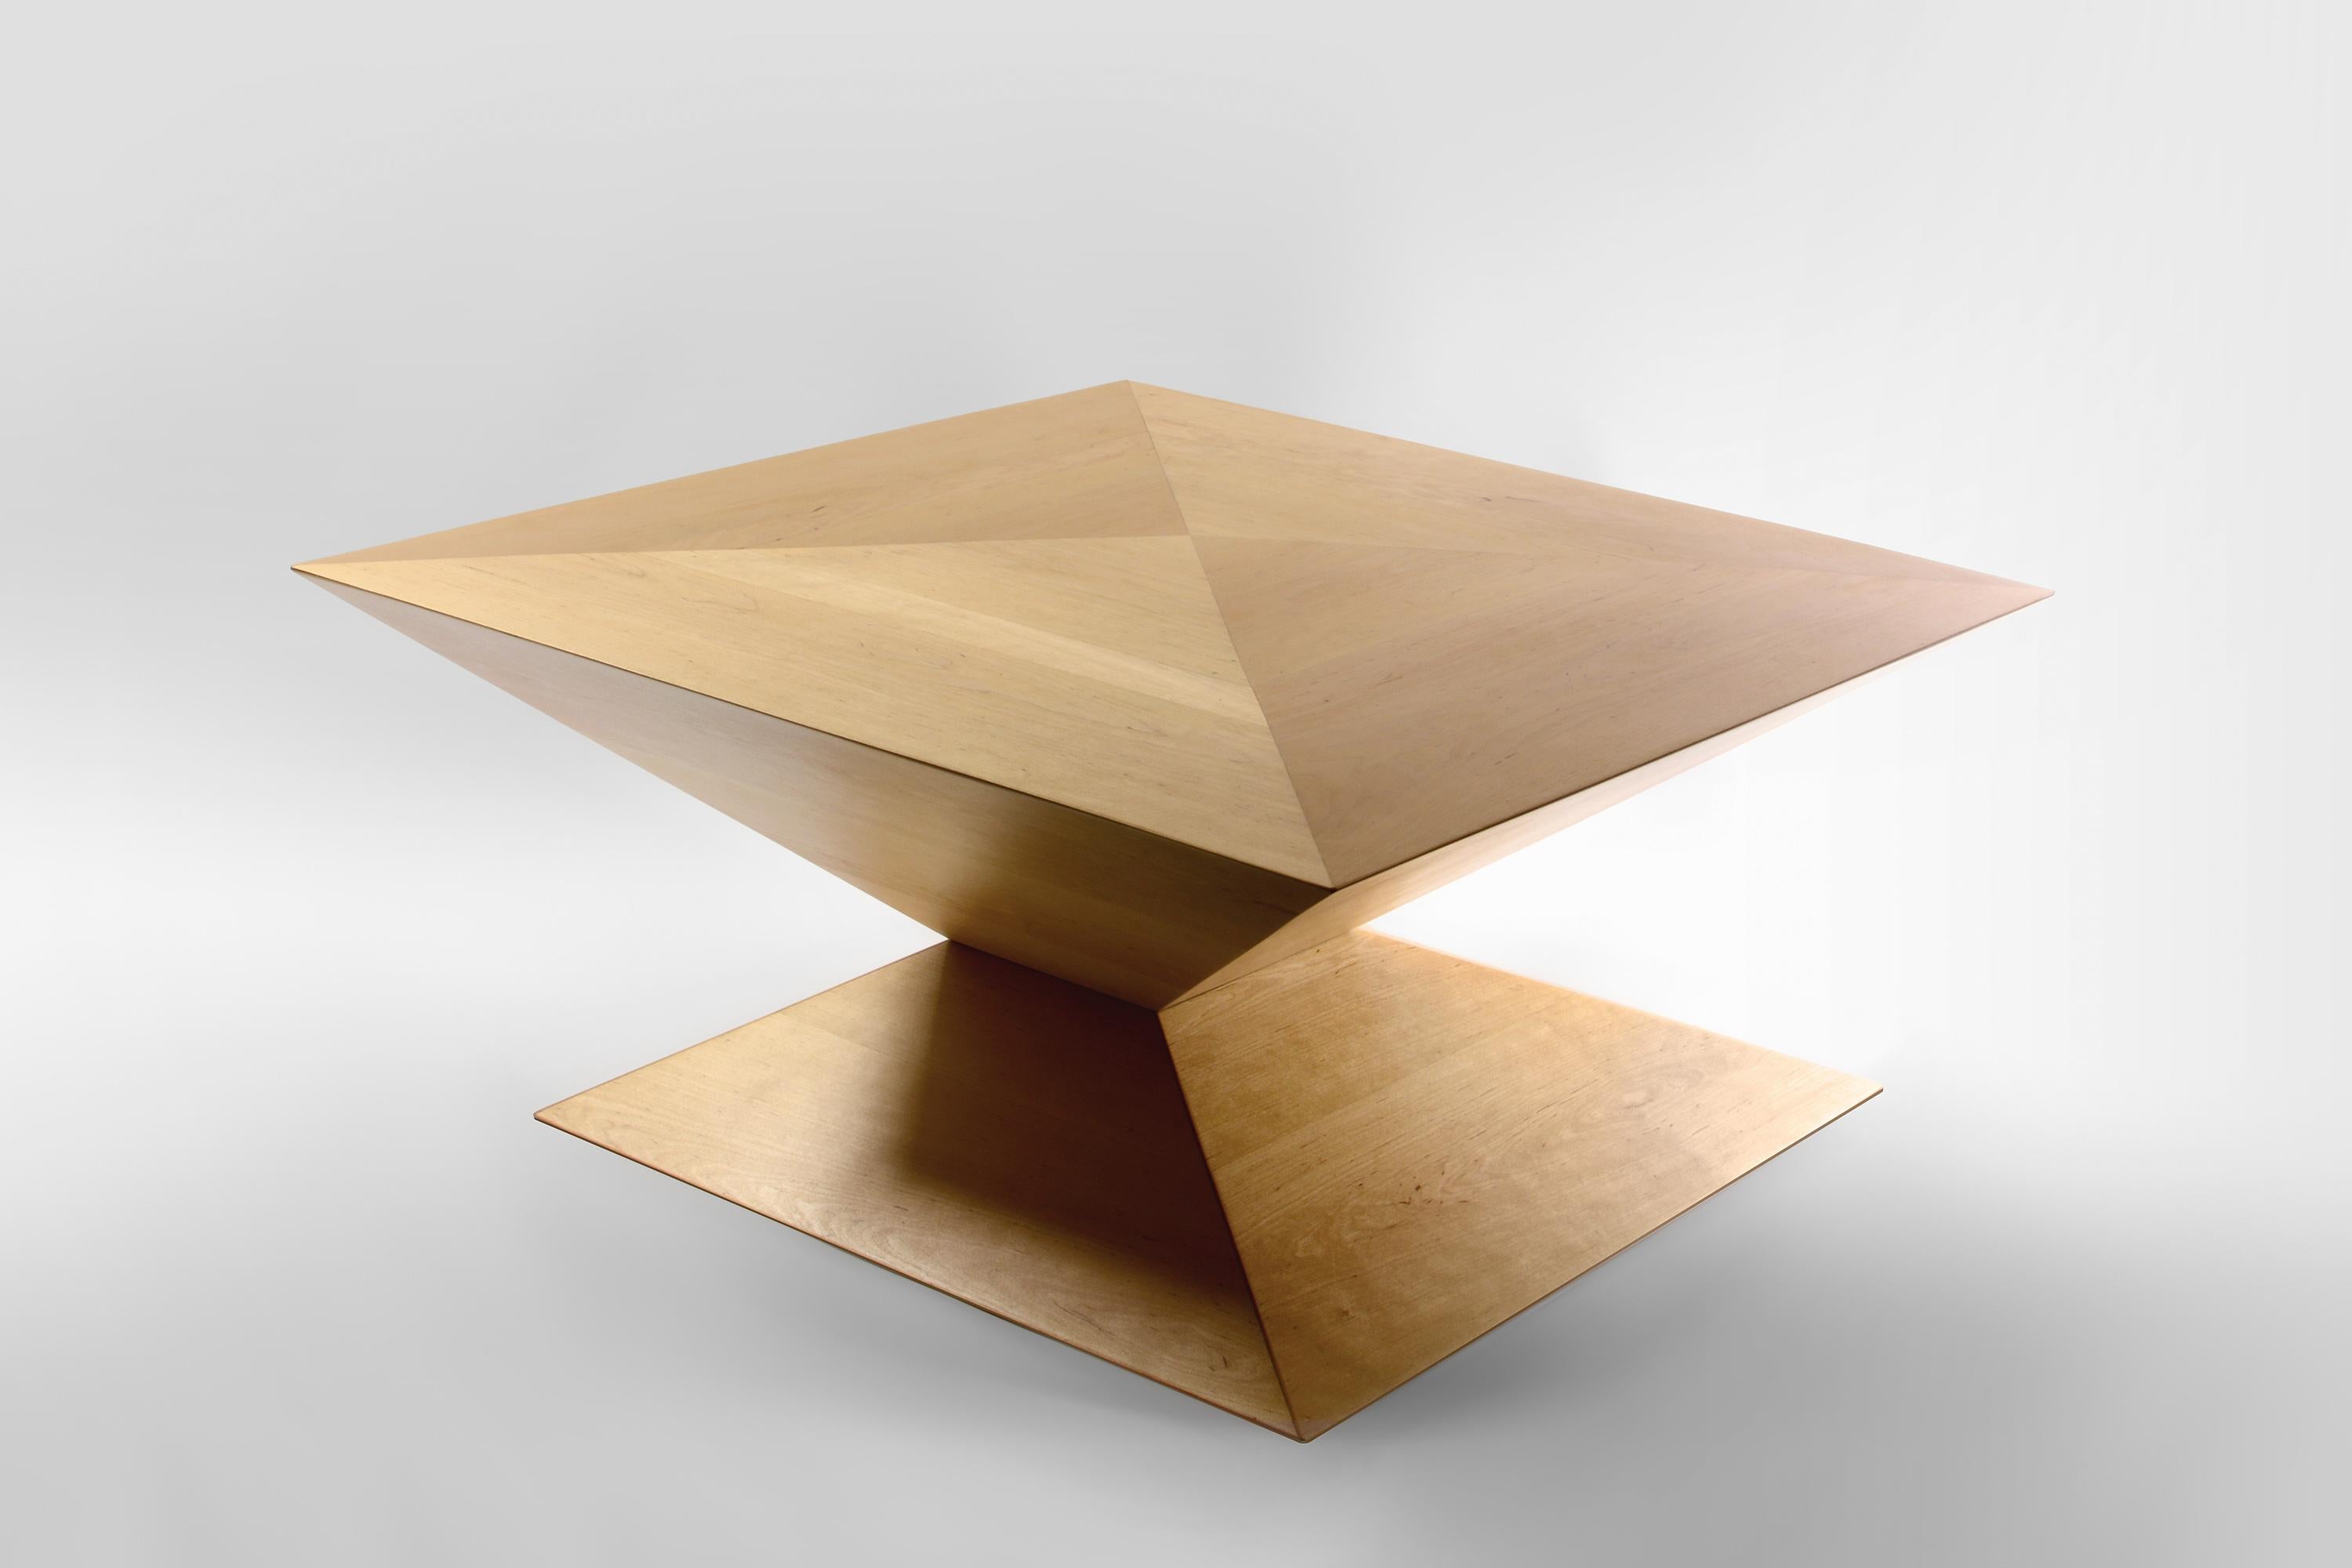 La table basse de Szostak Atelier est un meuble étonnant qui allie fonctionnalité et design pour créer un chef-d'œuvre d'artisanat. La forme asymétrique et dynamique de cette table est à la fois gracieuse et accrocheuse, ce qui en fait un complément